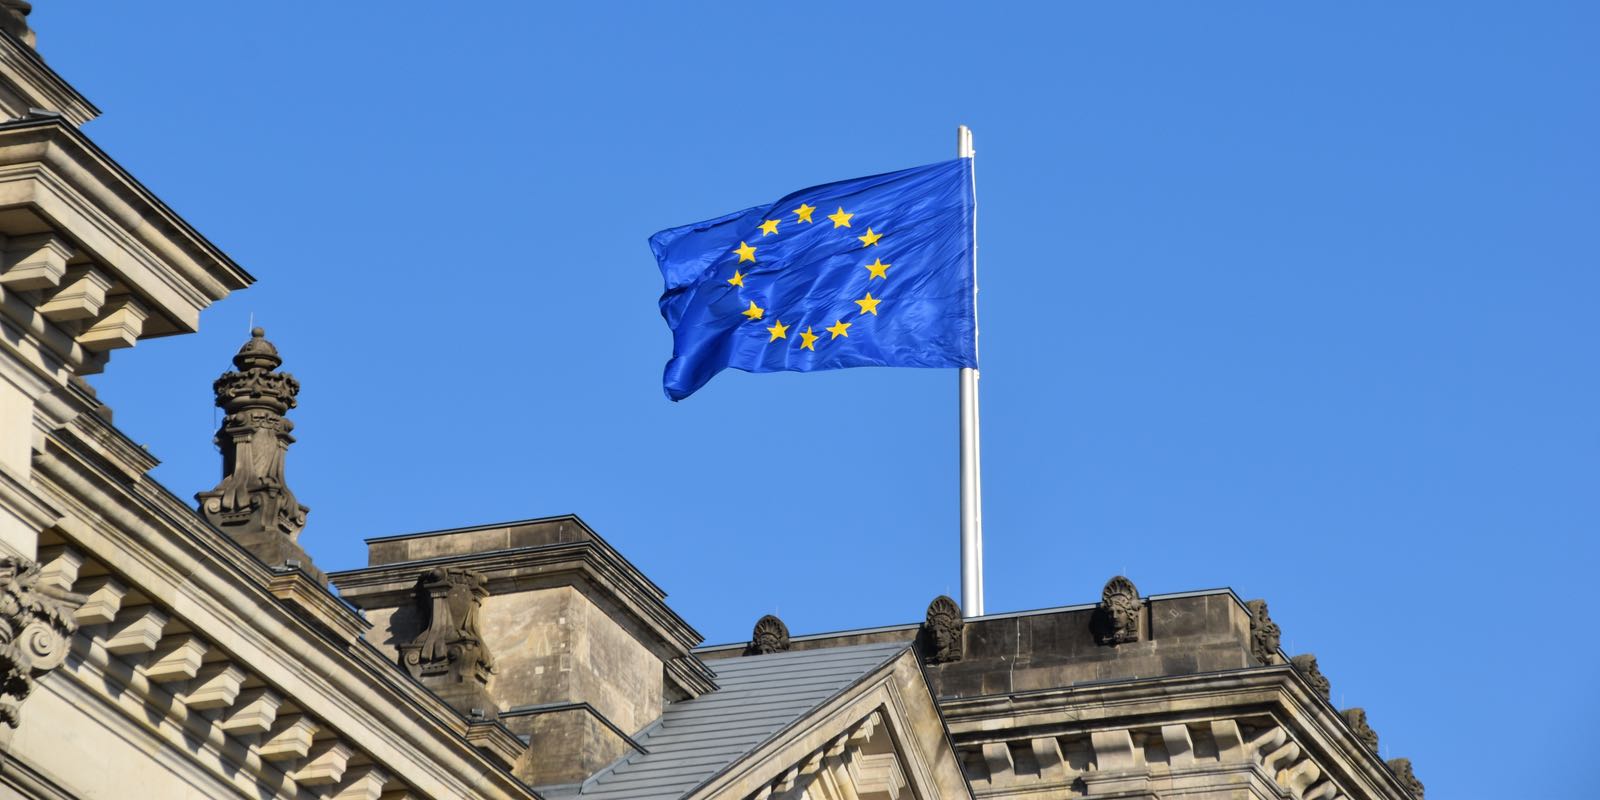 "Le drapeau de l'Union Européenne"